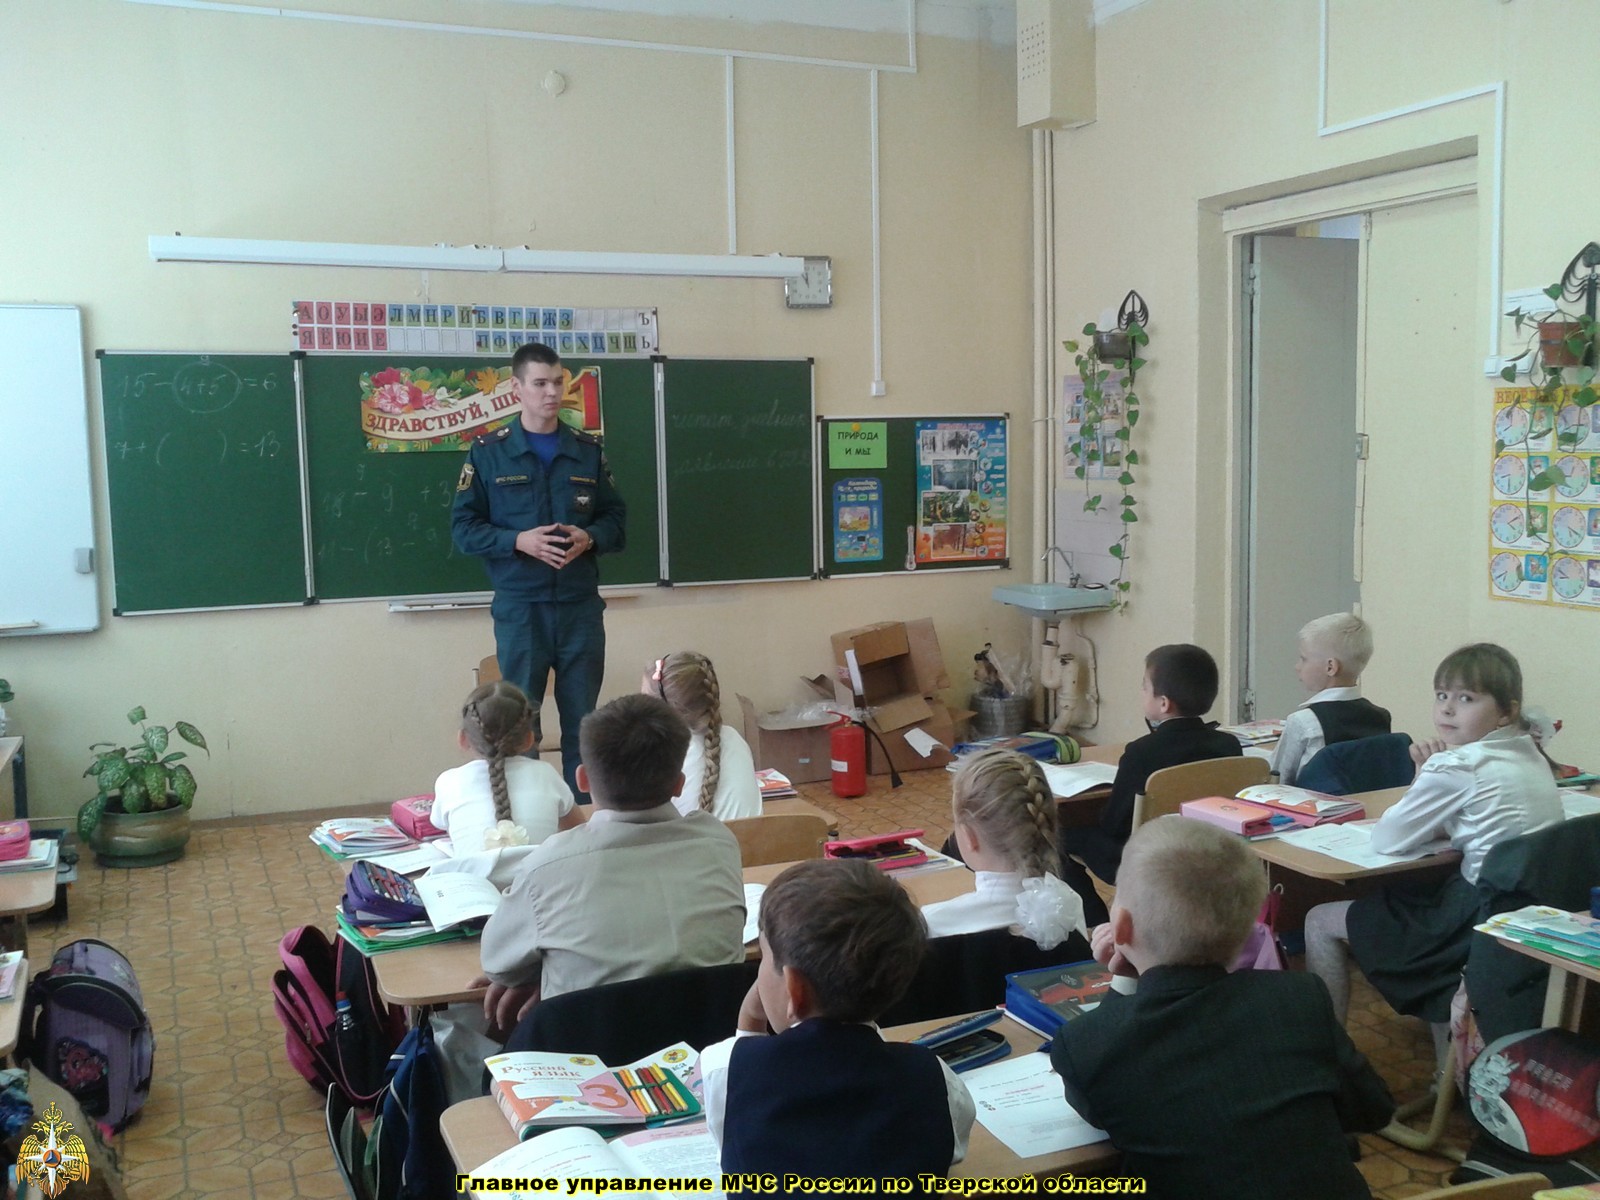 Дни безопасности продолжаются в образовательных учреждениях Тверской области